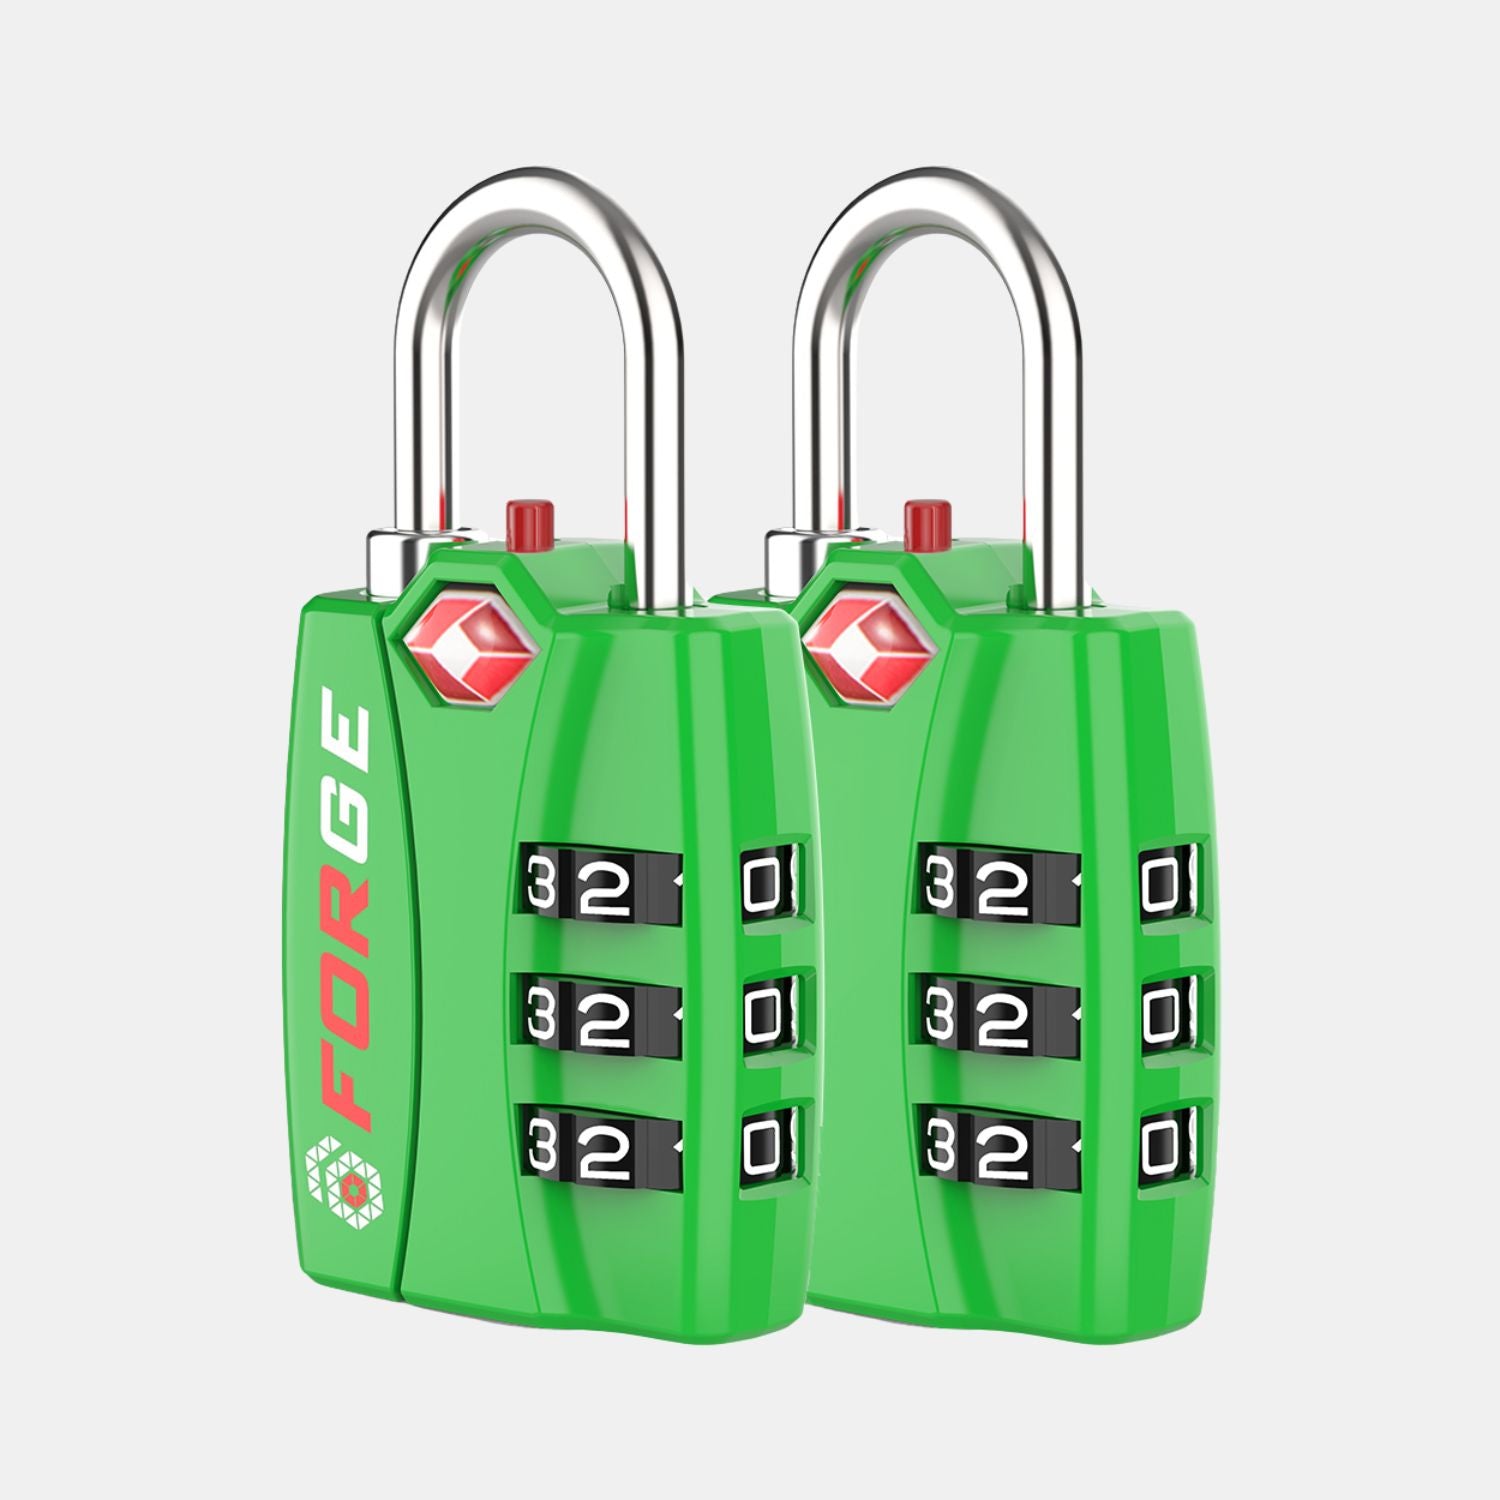 Candados para equipaje aprobados por la TSA: combinación de 3 dígitos, indicador de alerta abierta